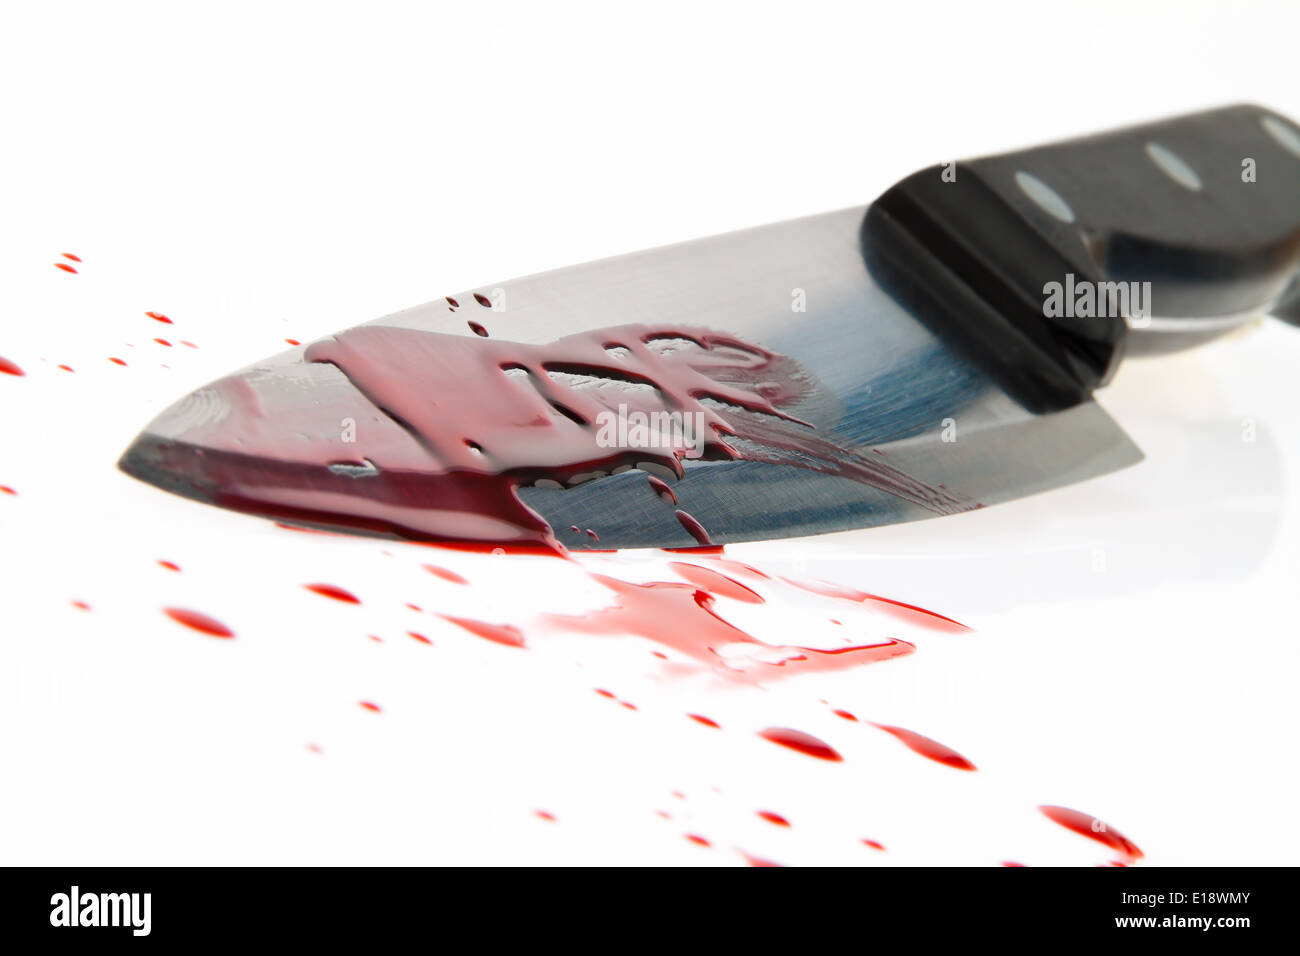 Ein Messer mit Blut verschmiert. Tatwaffe eines Mordes. Symbolfoto Kriminalit‰t Foto Stock